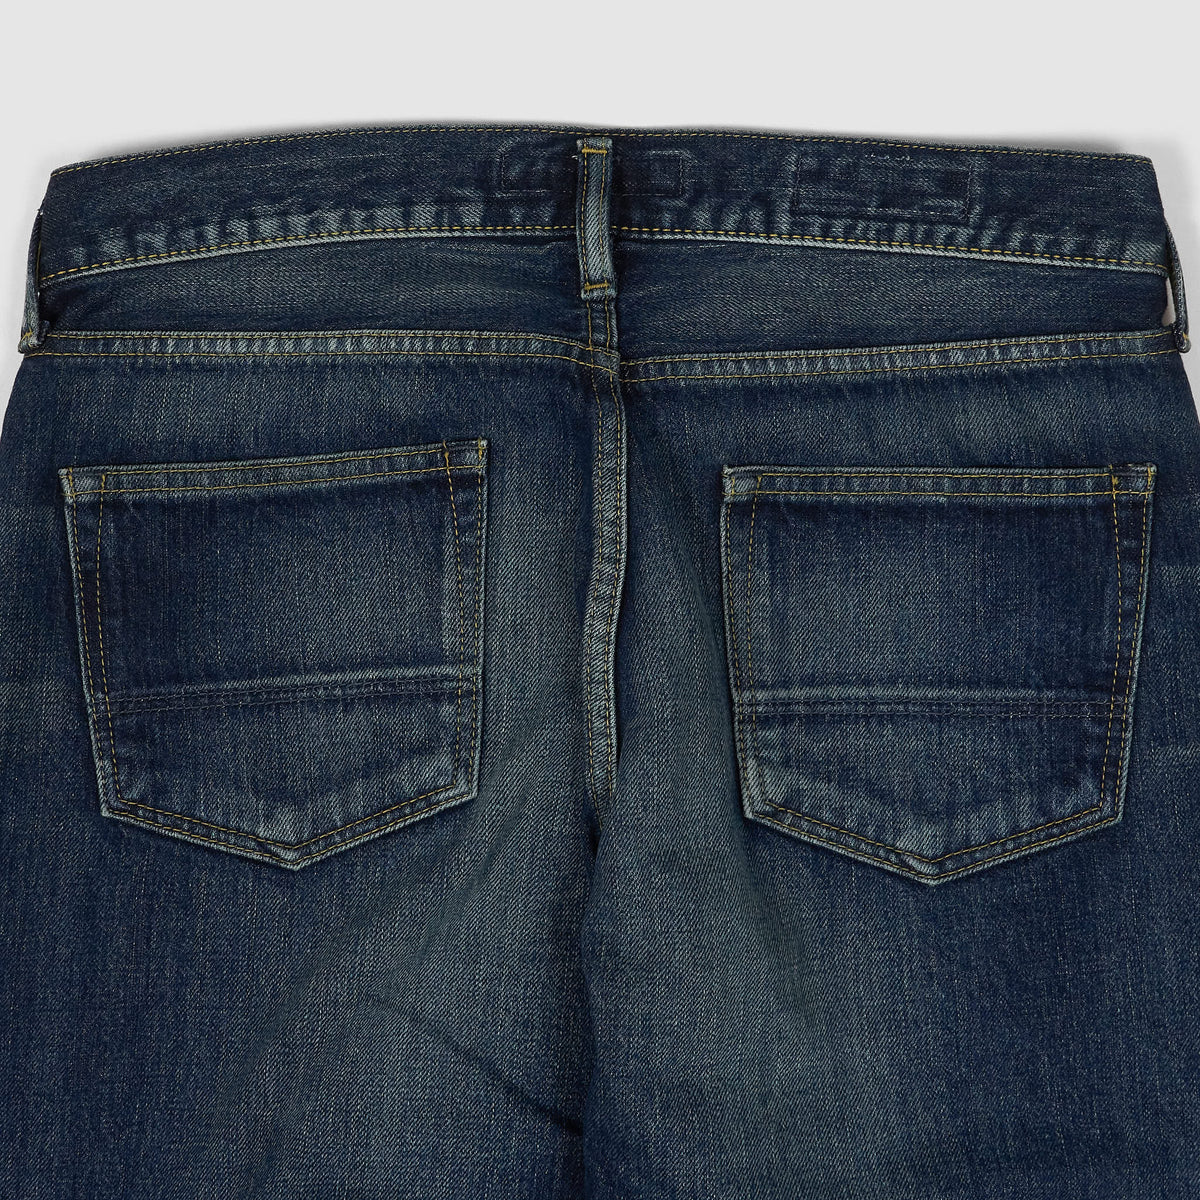 FDMTL Slim Fitted Straight Denim Hard Vintage Washed 5 Pocket Selvage Jeans